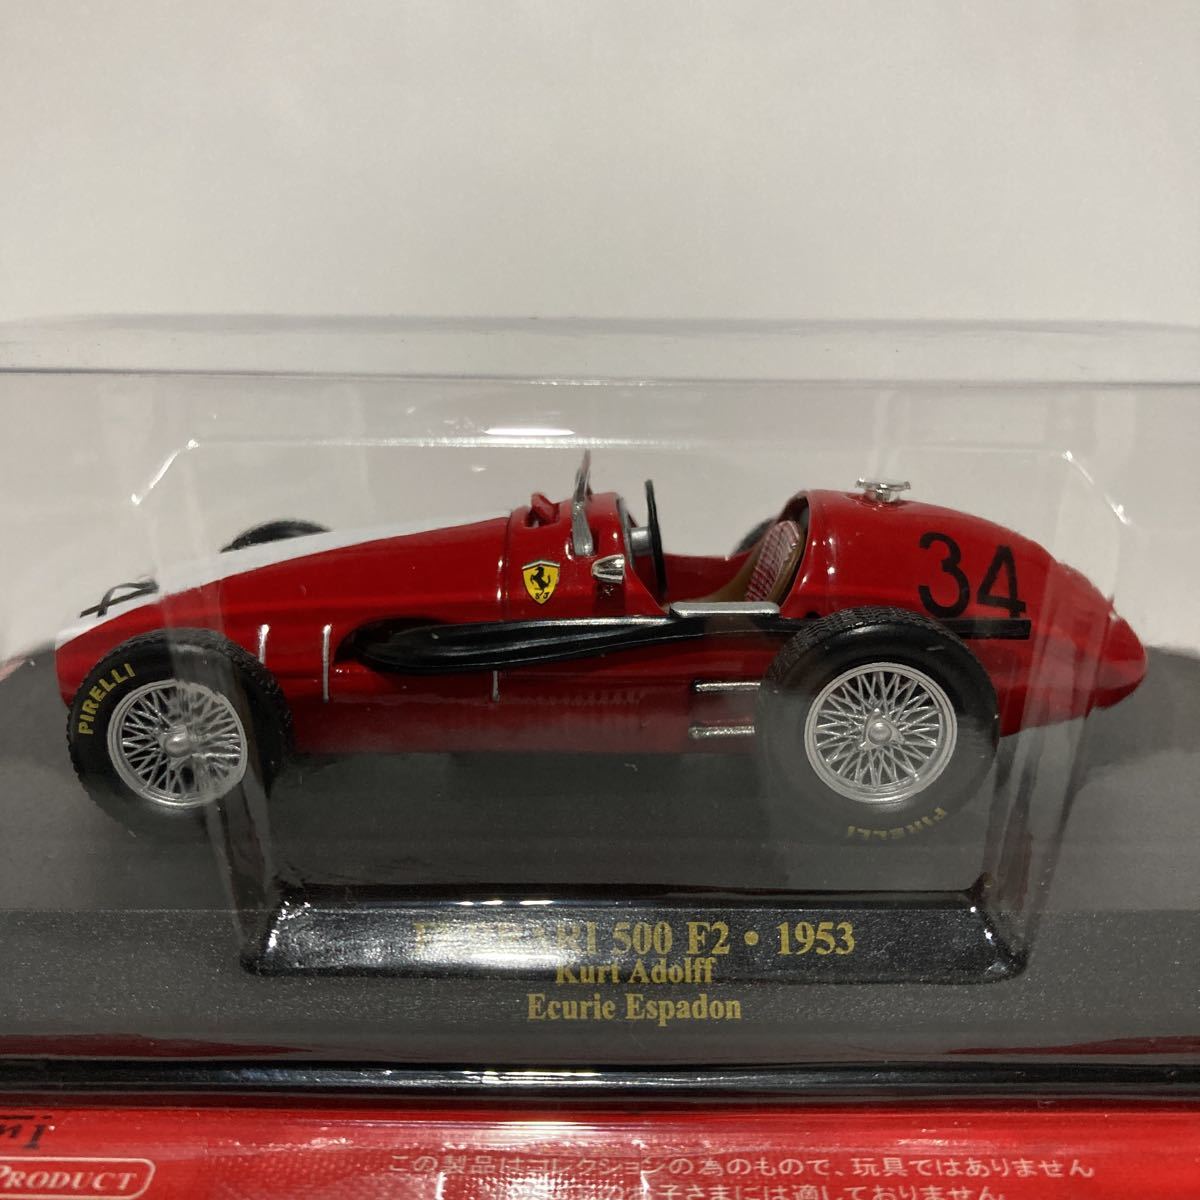 アシェット 公式フェラーリF1コレクション 1/43 Ferrari 500 F2 1953年 Kurt Adolff Ecurie Espadon #34 GP マシン ミニカー_画像3